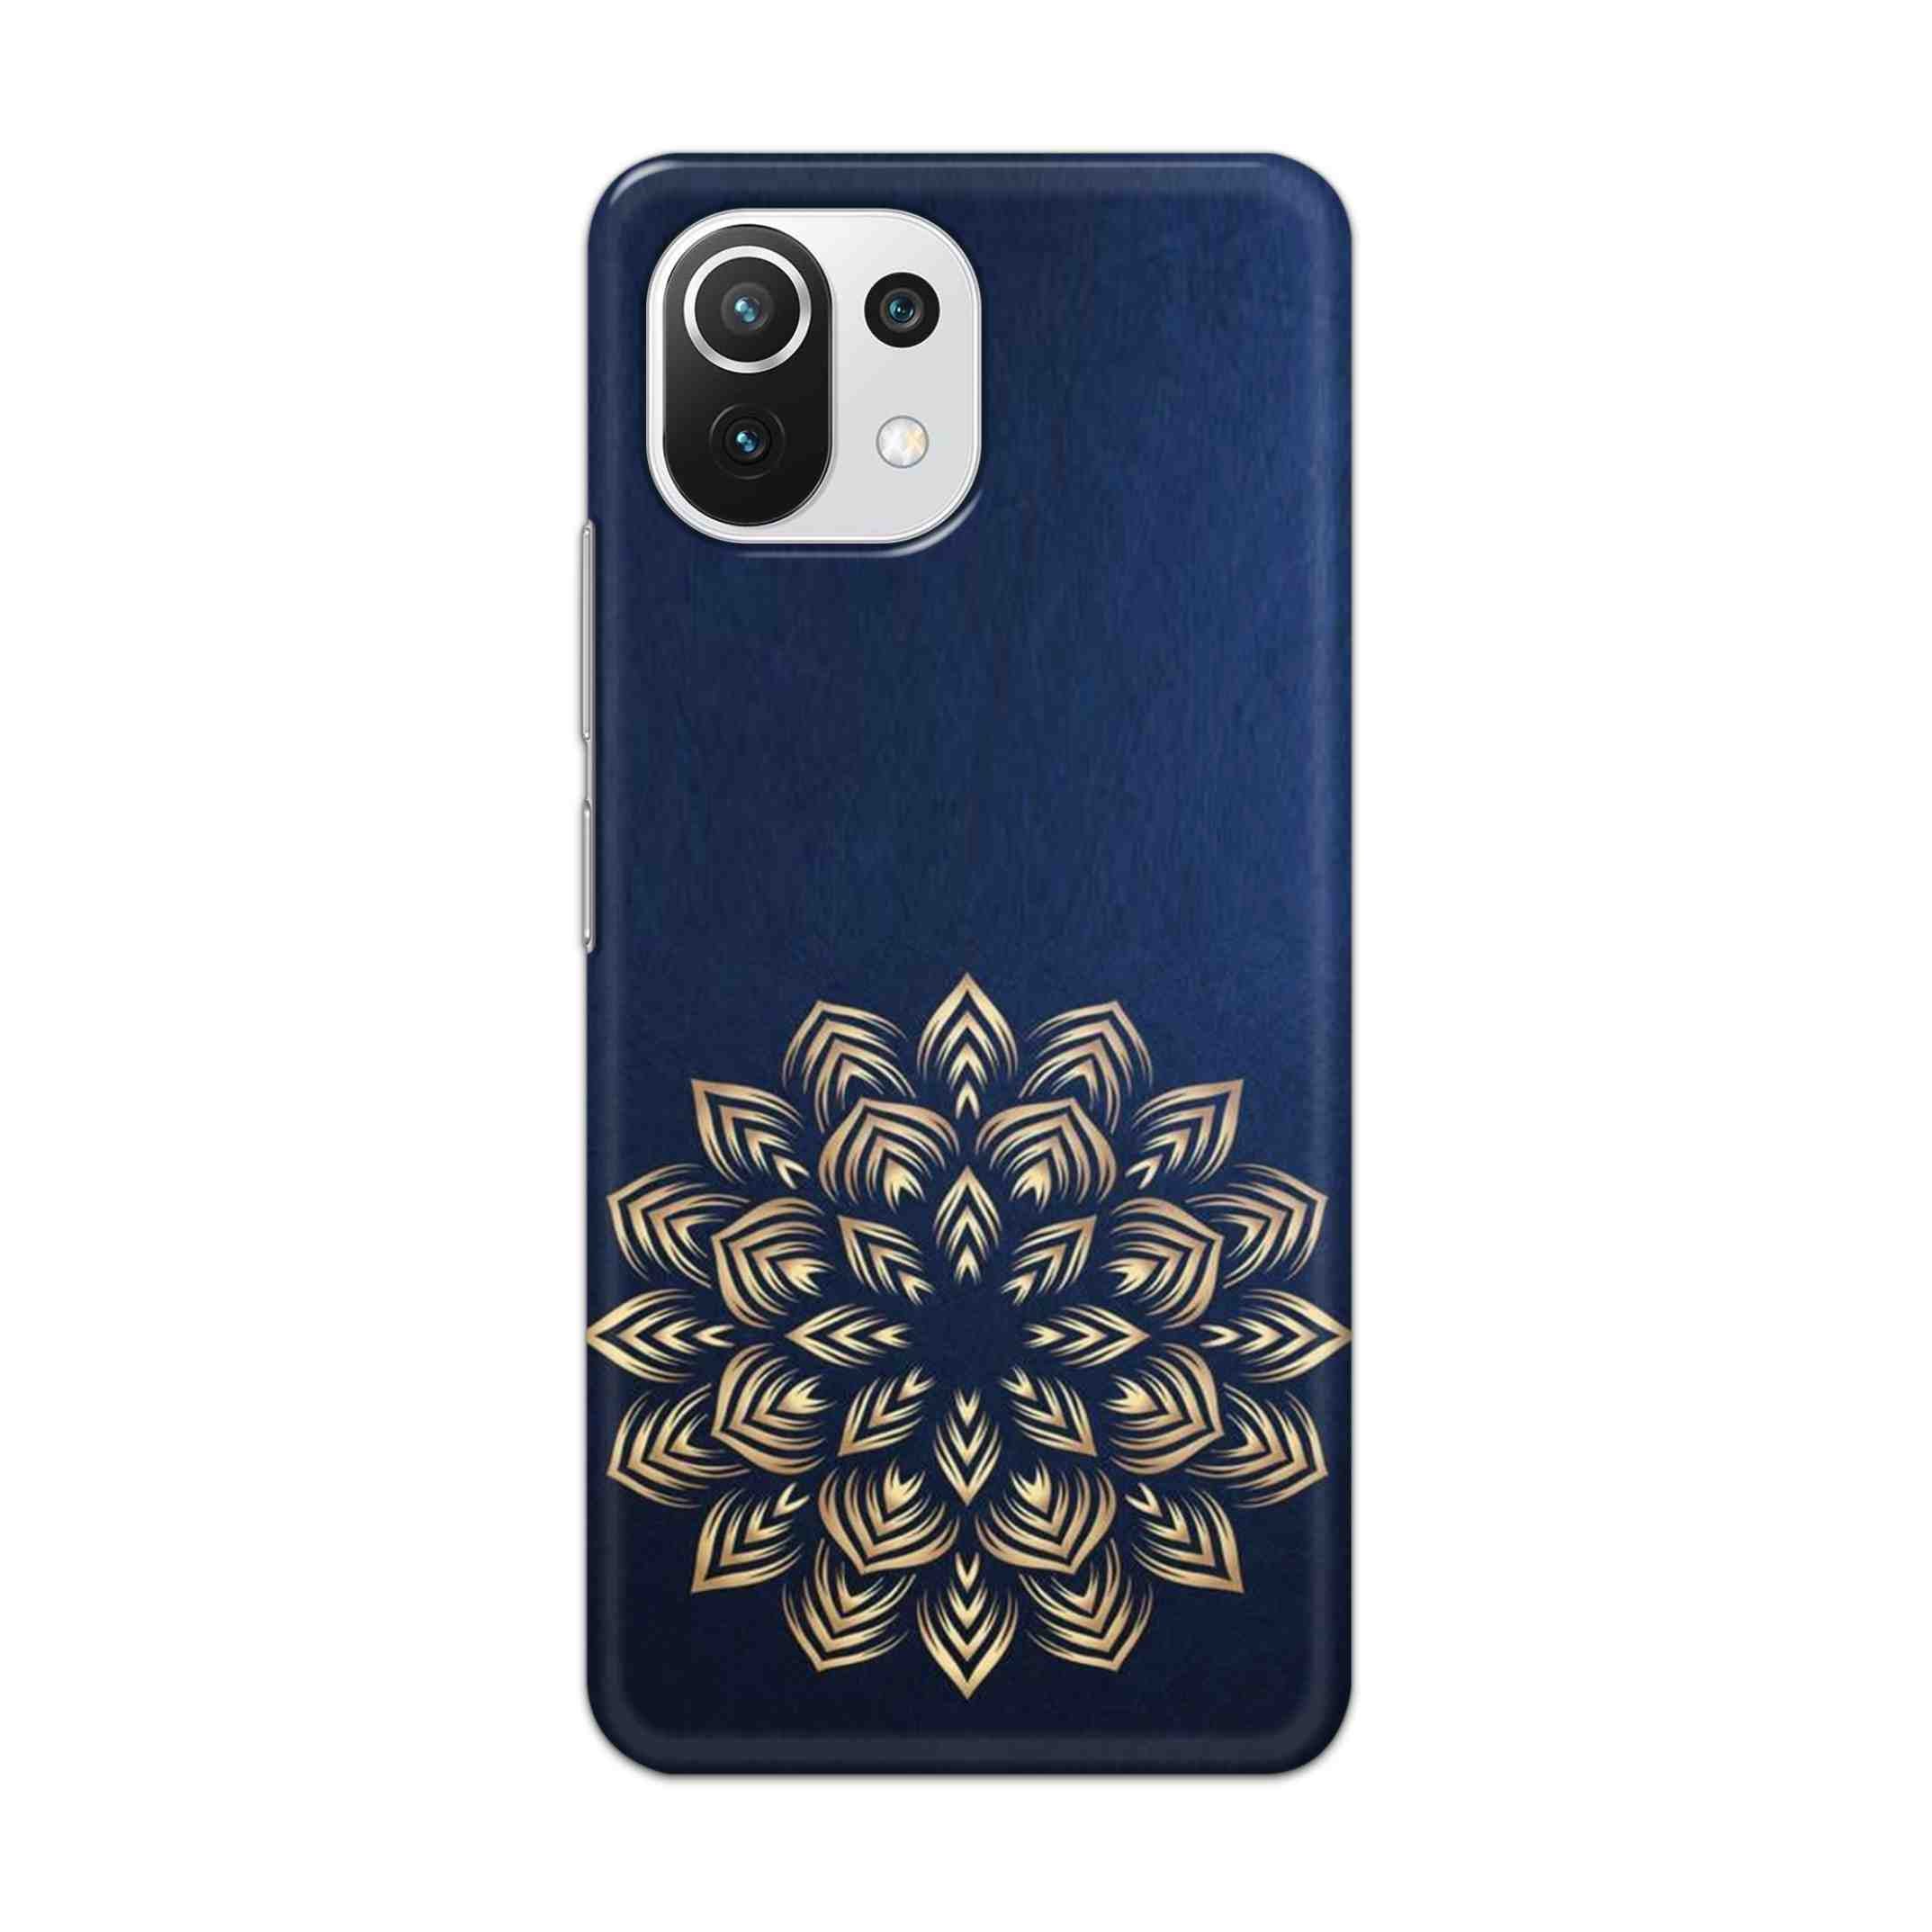 Buy Heart Mandala Hard Back Mobile Phone Case Cover For Mi 11 Lite NE 5G Online